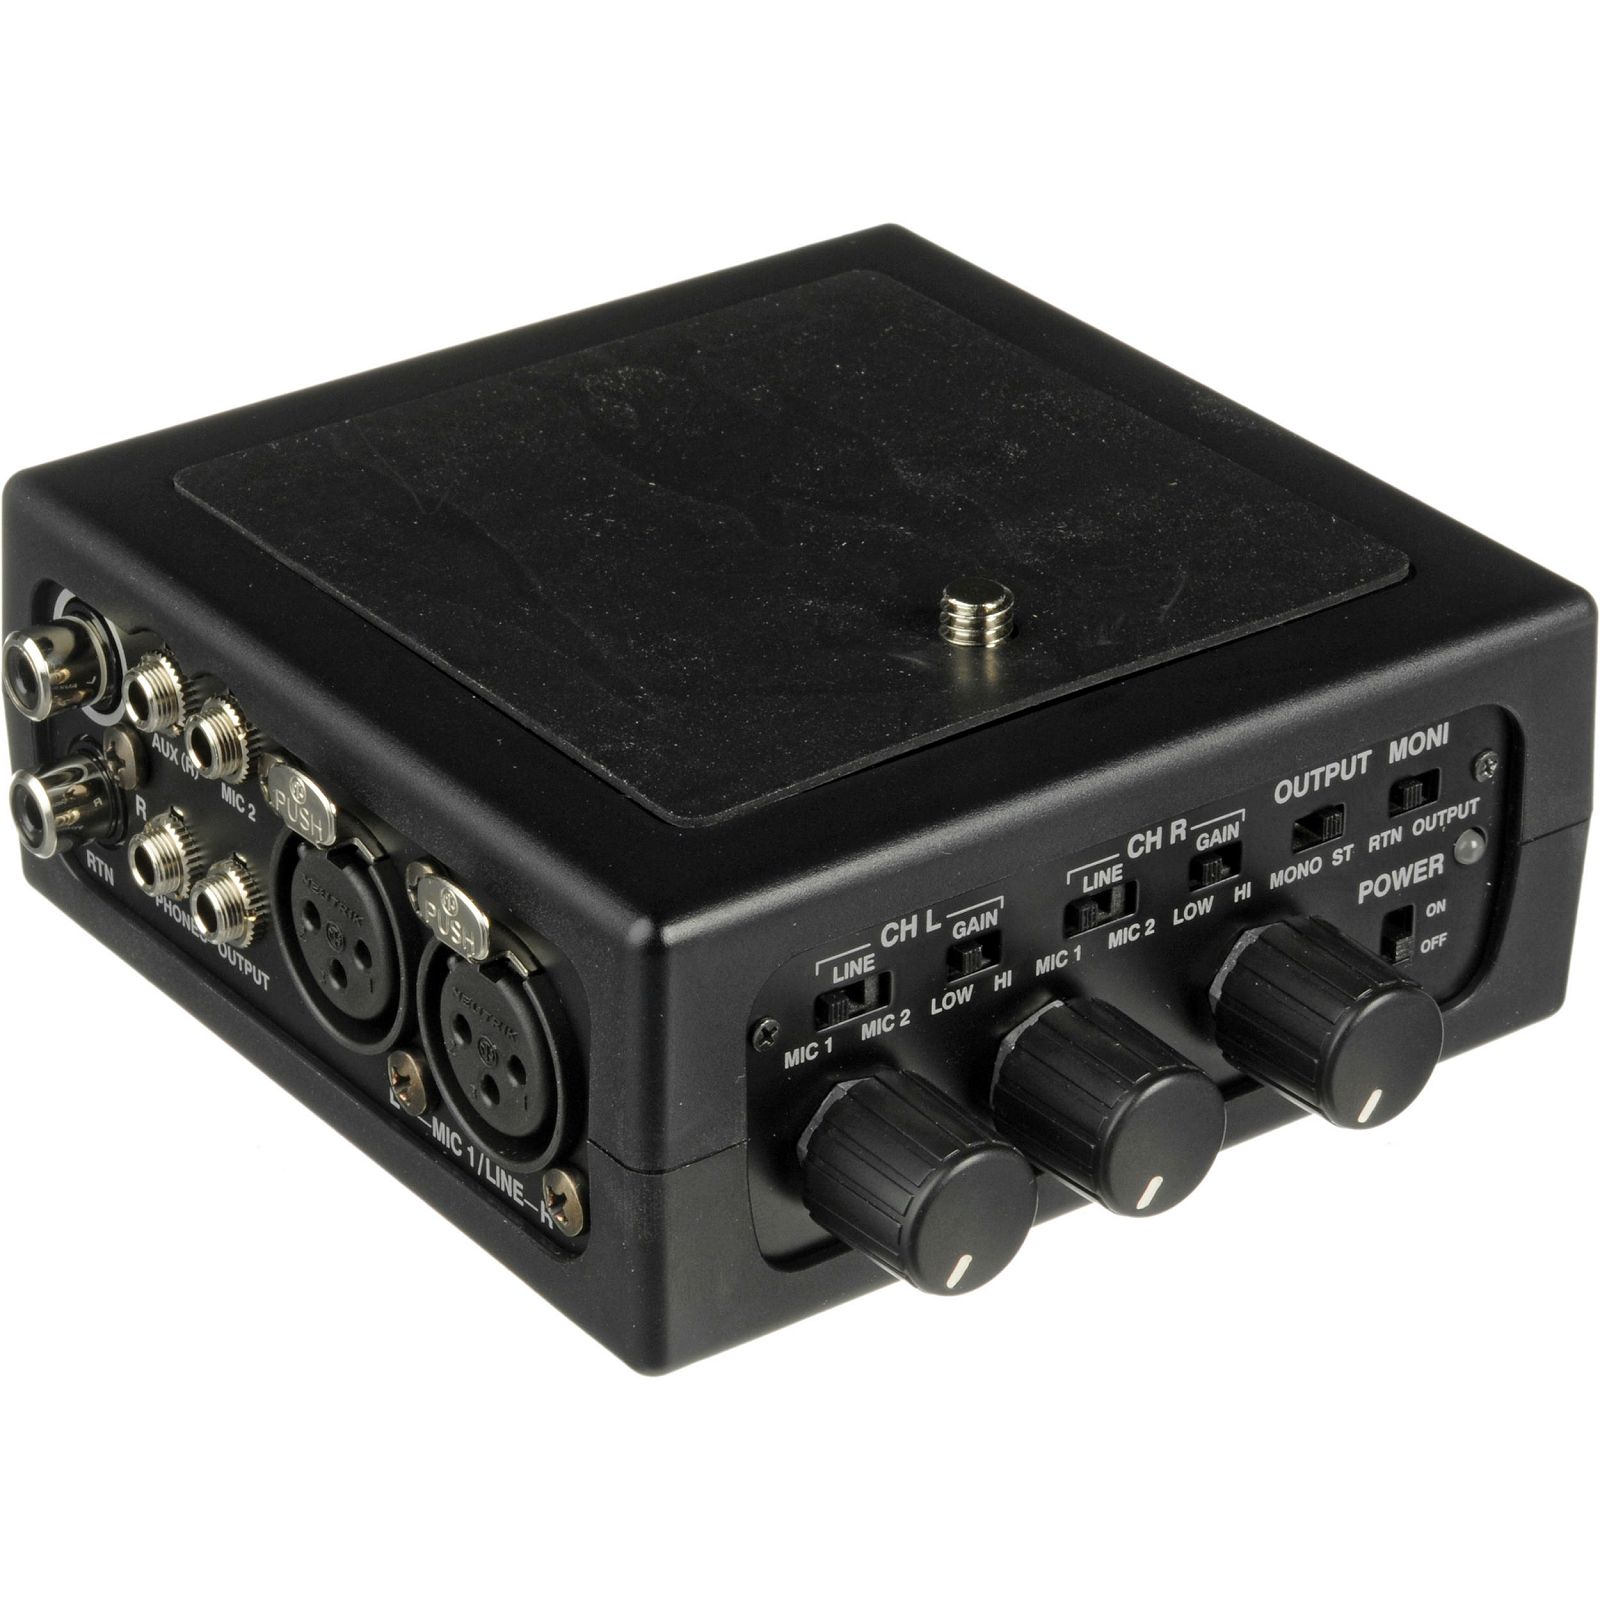 Azden FMX-DSLR Portable Audio Mixer with Pre Amp for Digital SLR Camera